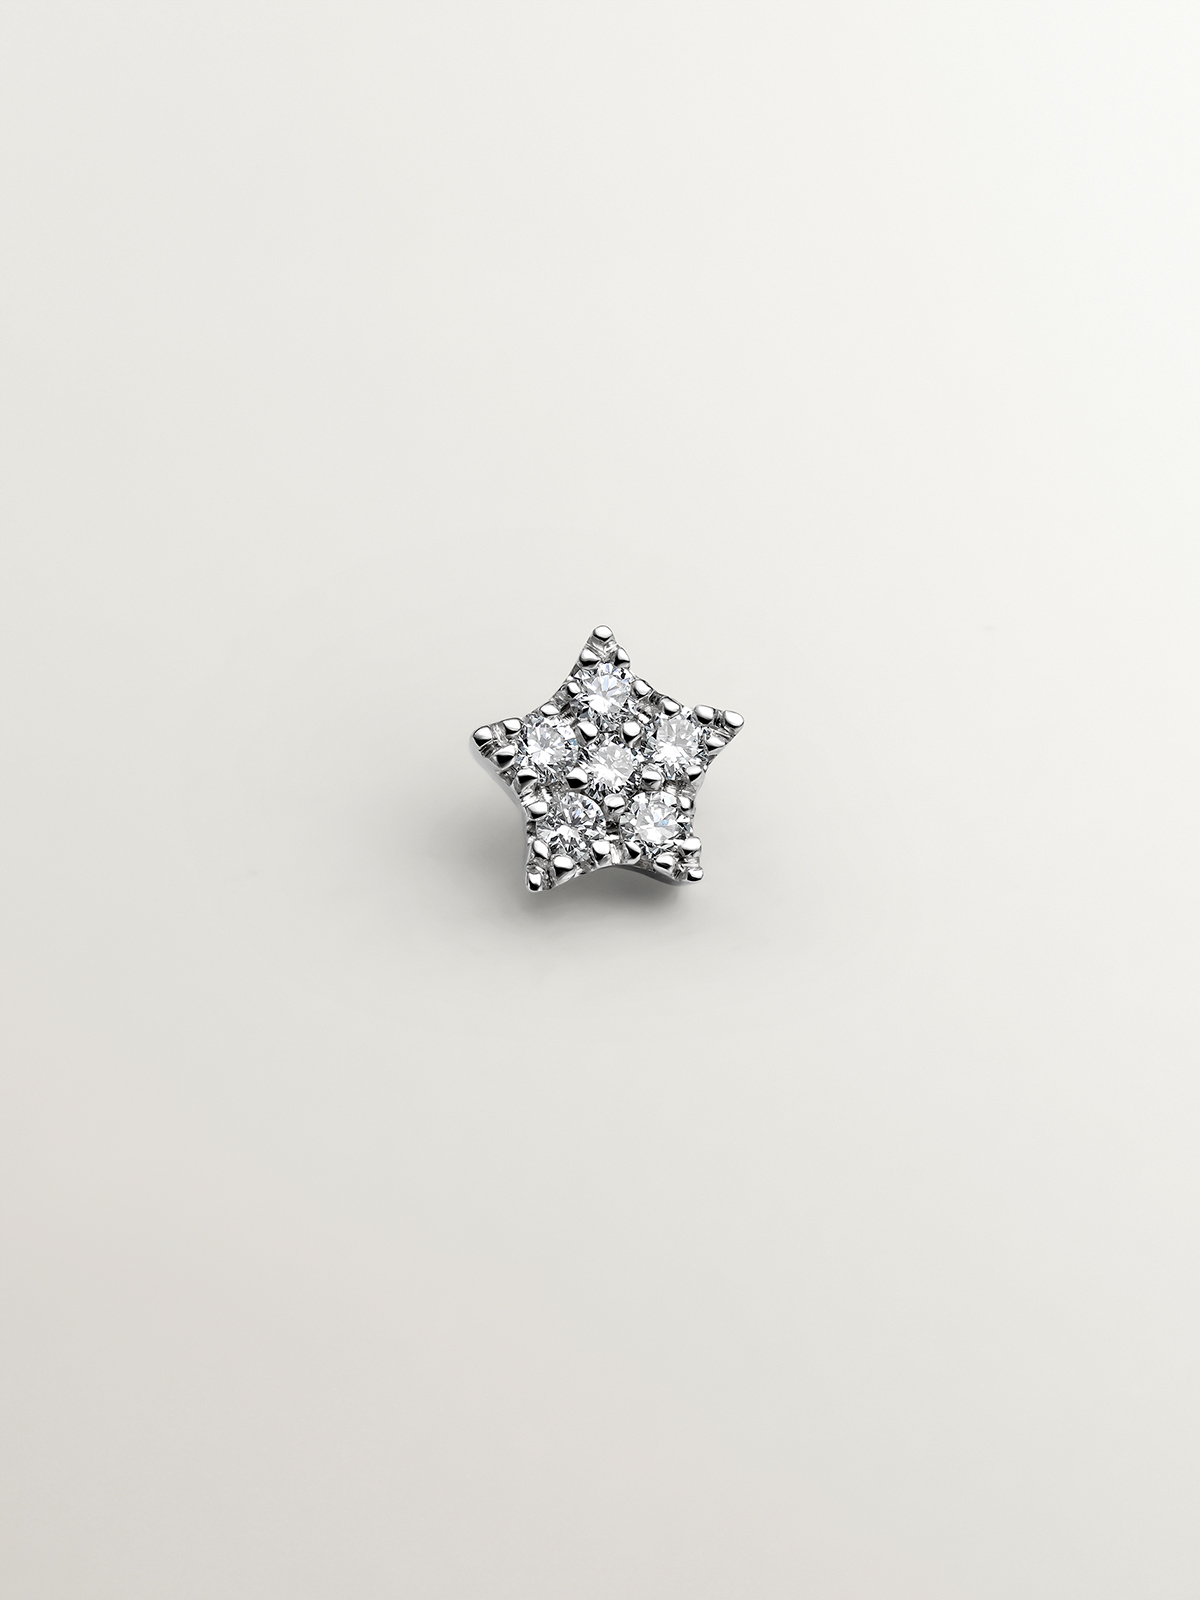 Piercing en or blanc 18K avec des diamants de 0,05 cts et forme d'étoile